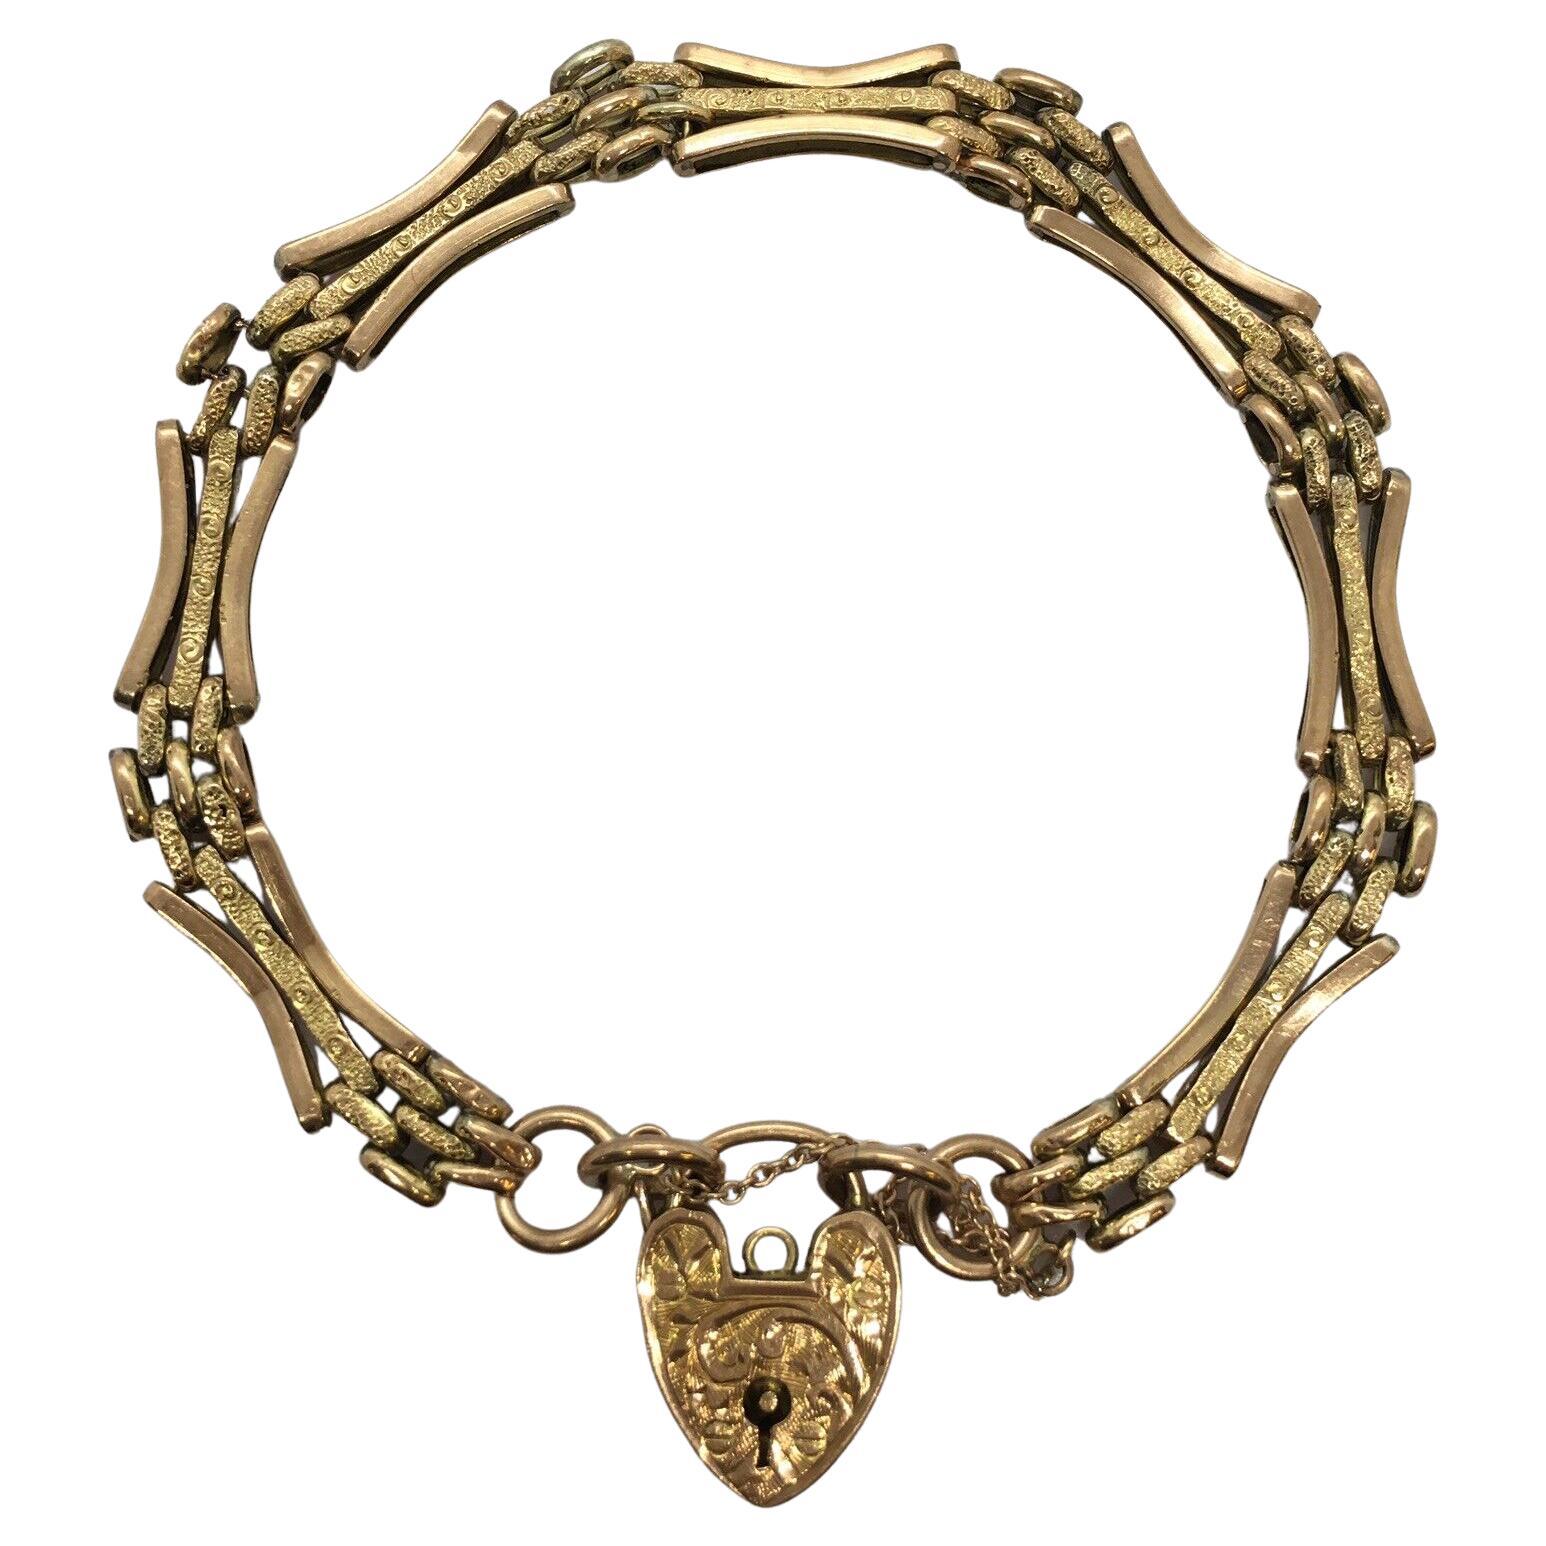 Victorian 9K Gold Antique Heart Padlock Gate Bracelet UK 9.8 Gr Clean